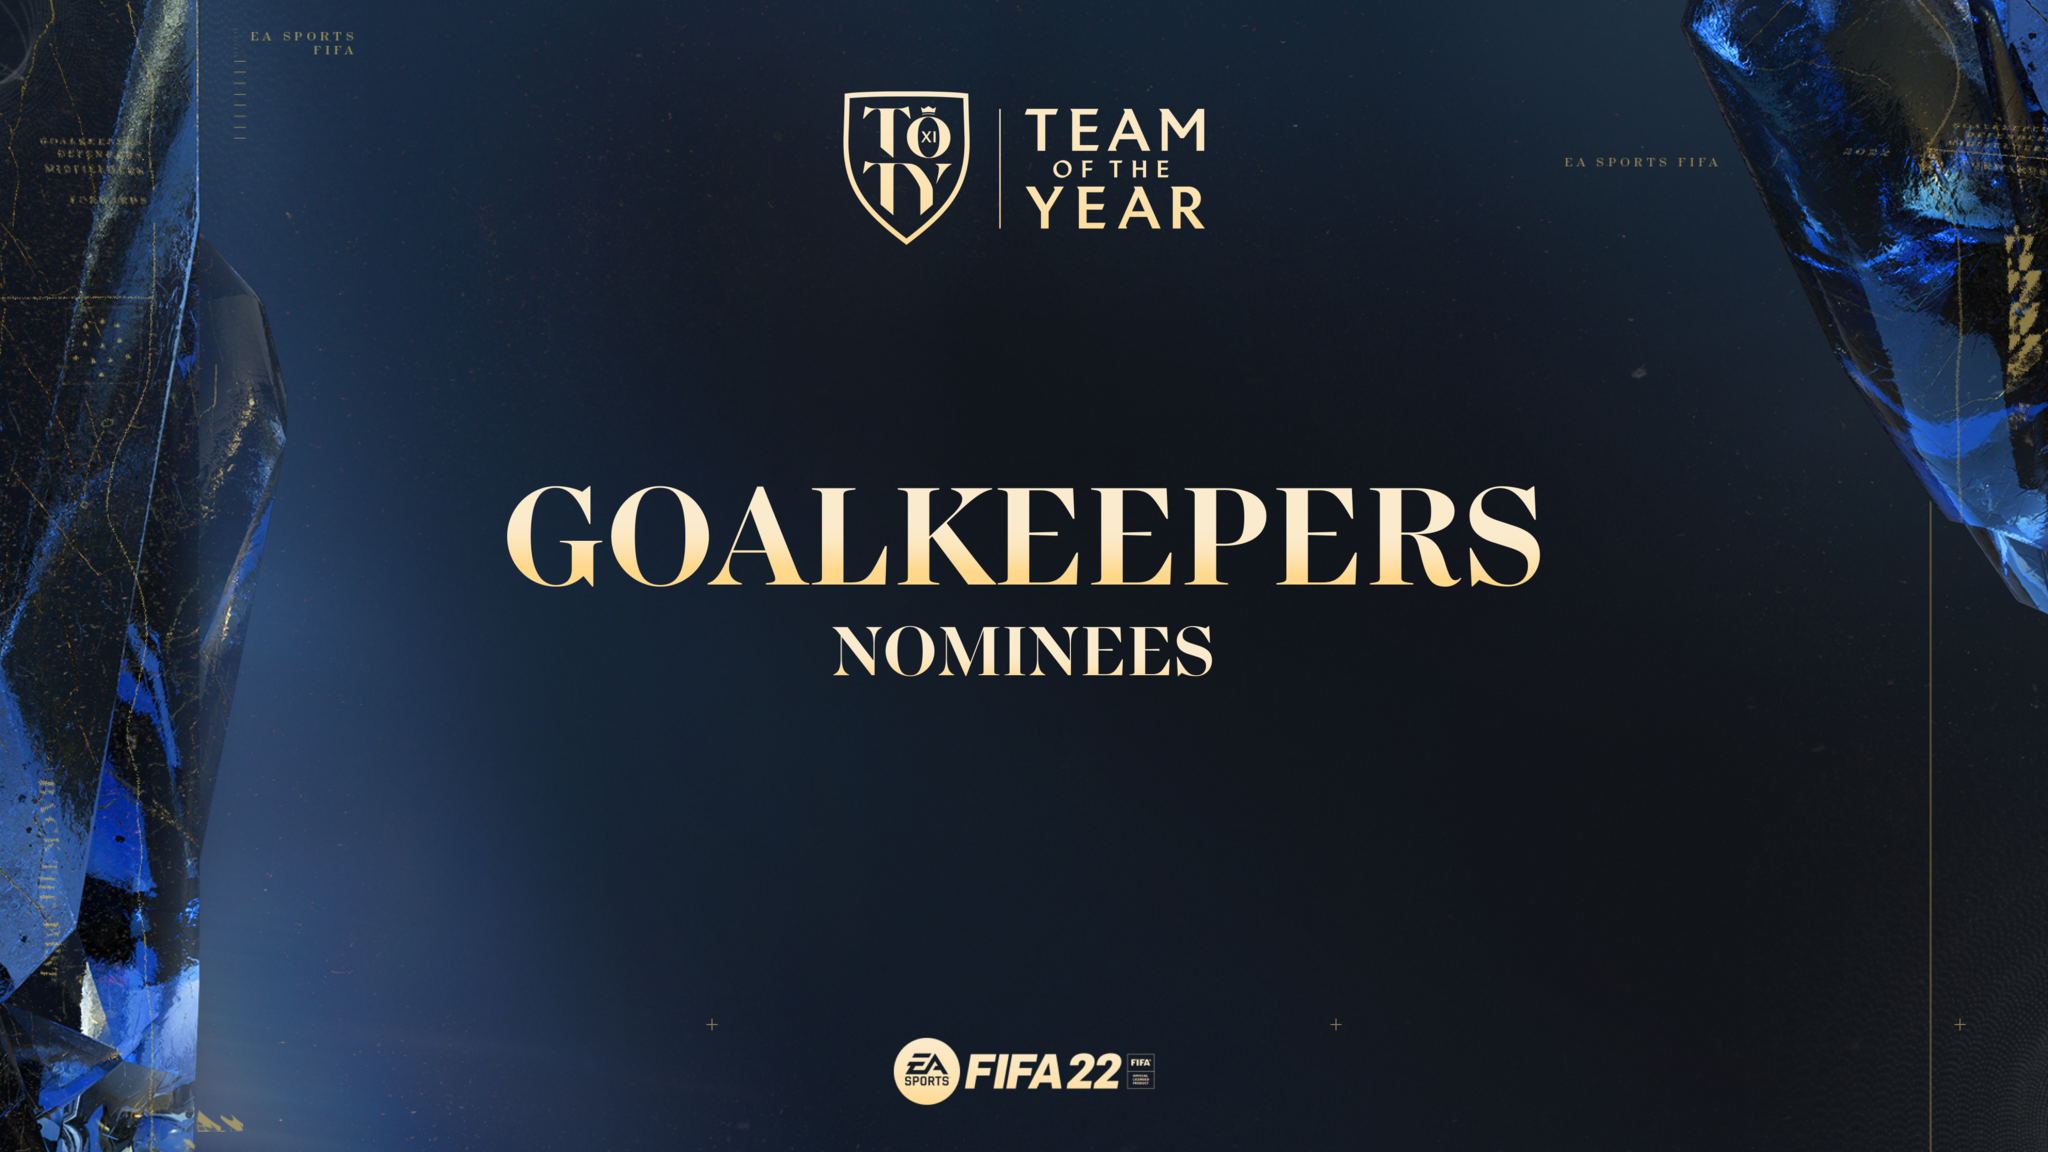 Portieri nominati per FIFA 22 TOTY